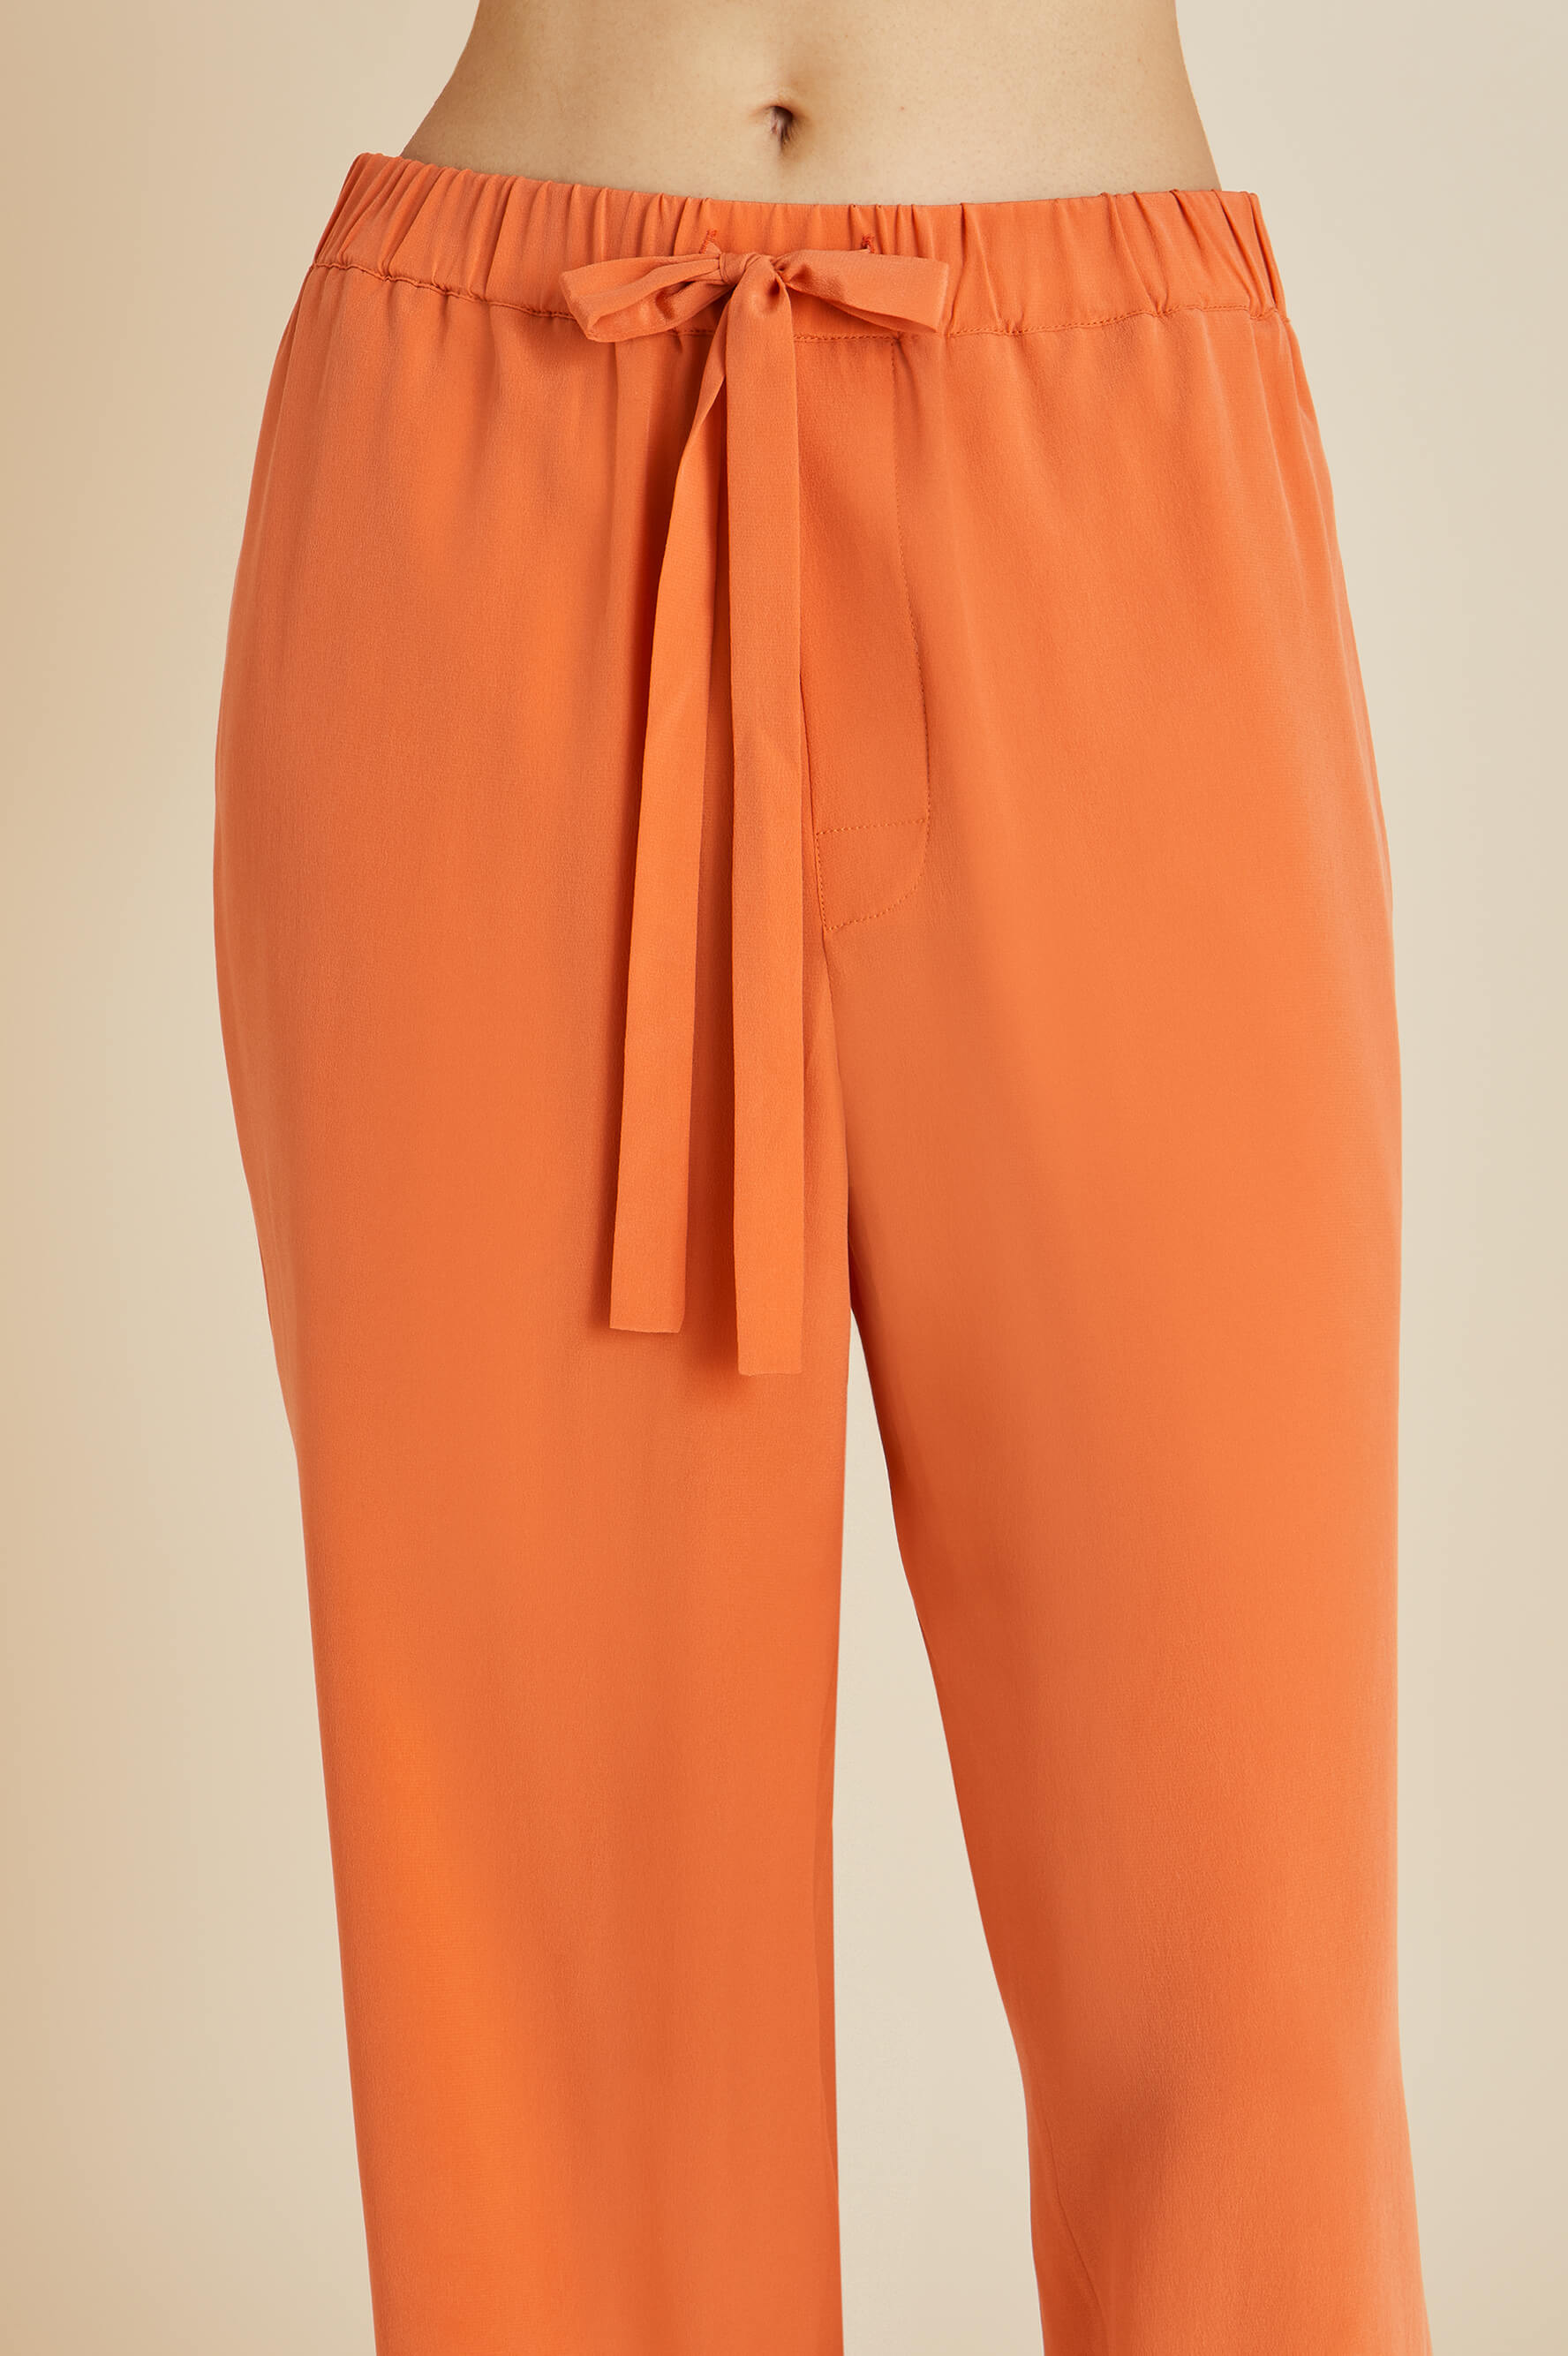 Yves Orange Silk Crêpe de Chine Pyjamas